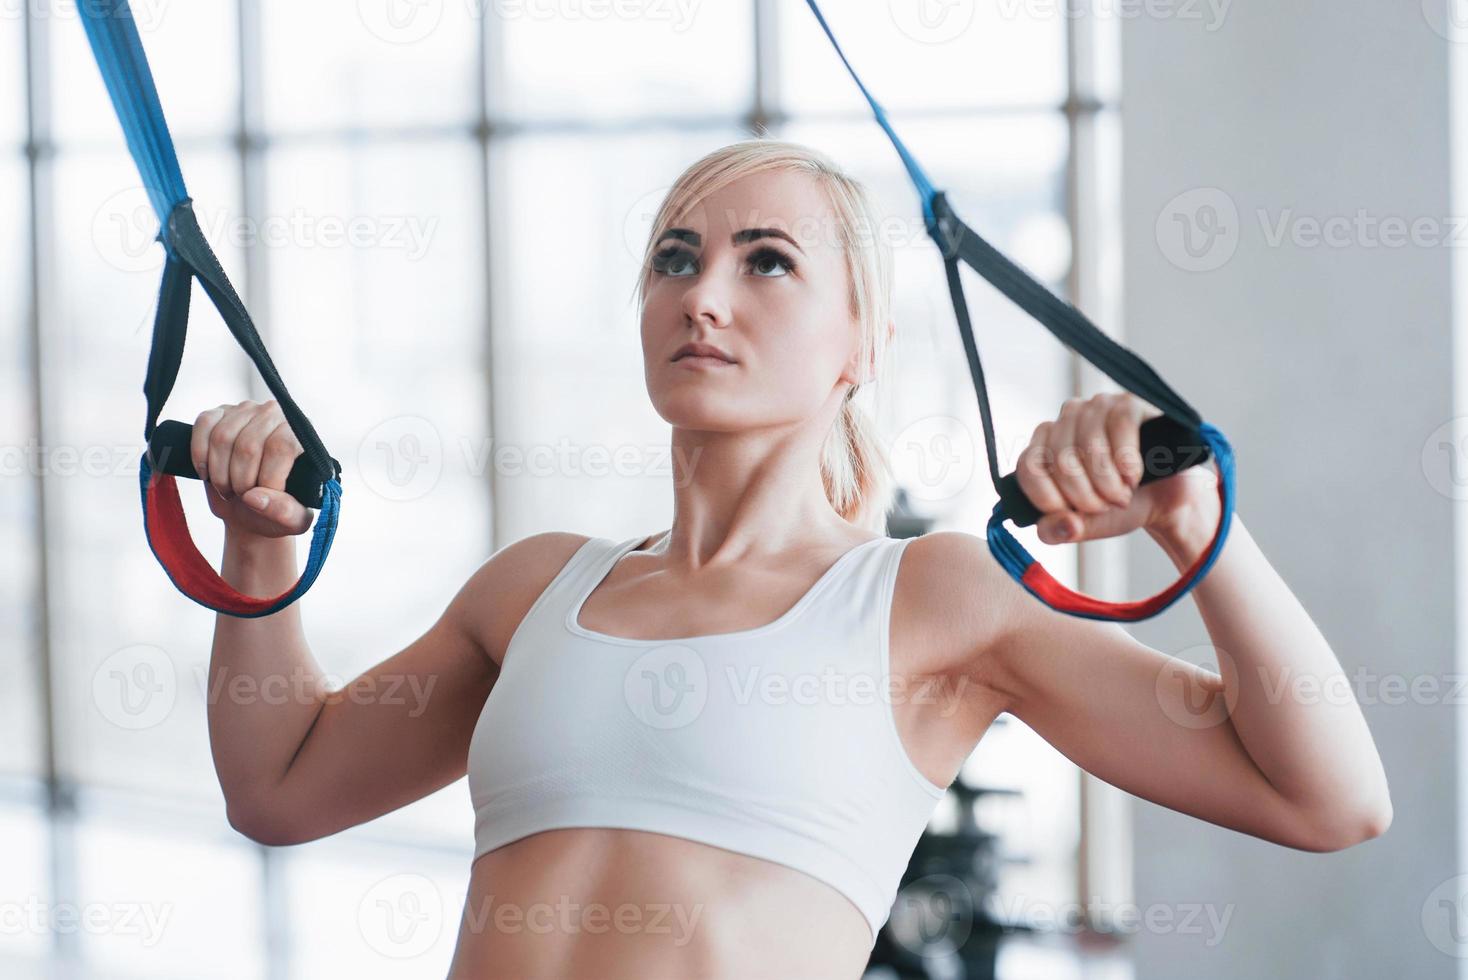 vrouwen doen push-ups training armen met trx fitness bandjes in de sportschool concept workout gezonde levensstijl sport foto